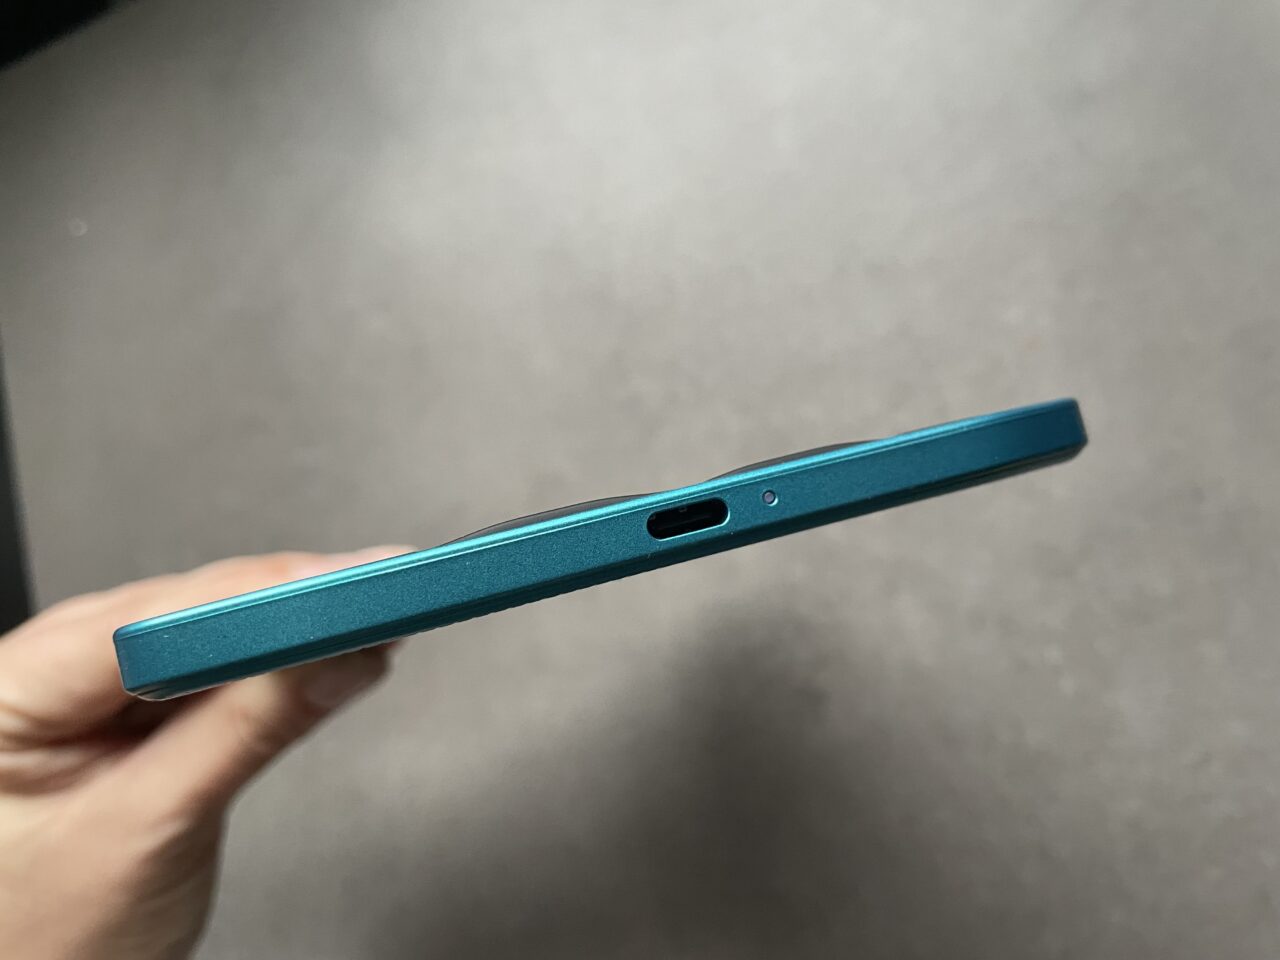 Boczny widok zamkniętego, niebieskiego laptopa z widocznym portem USB i wycięciem na wentylację.